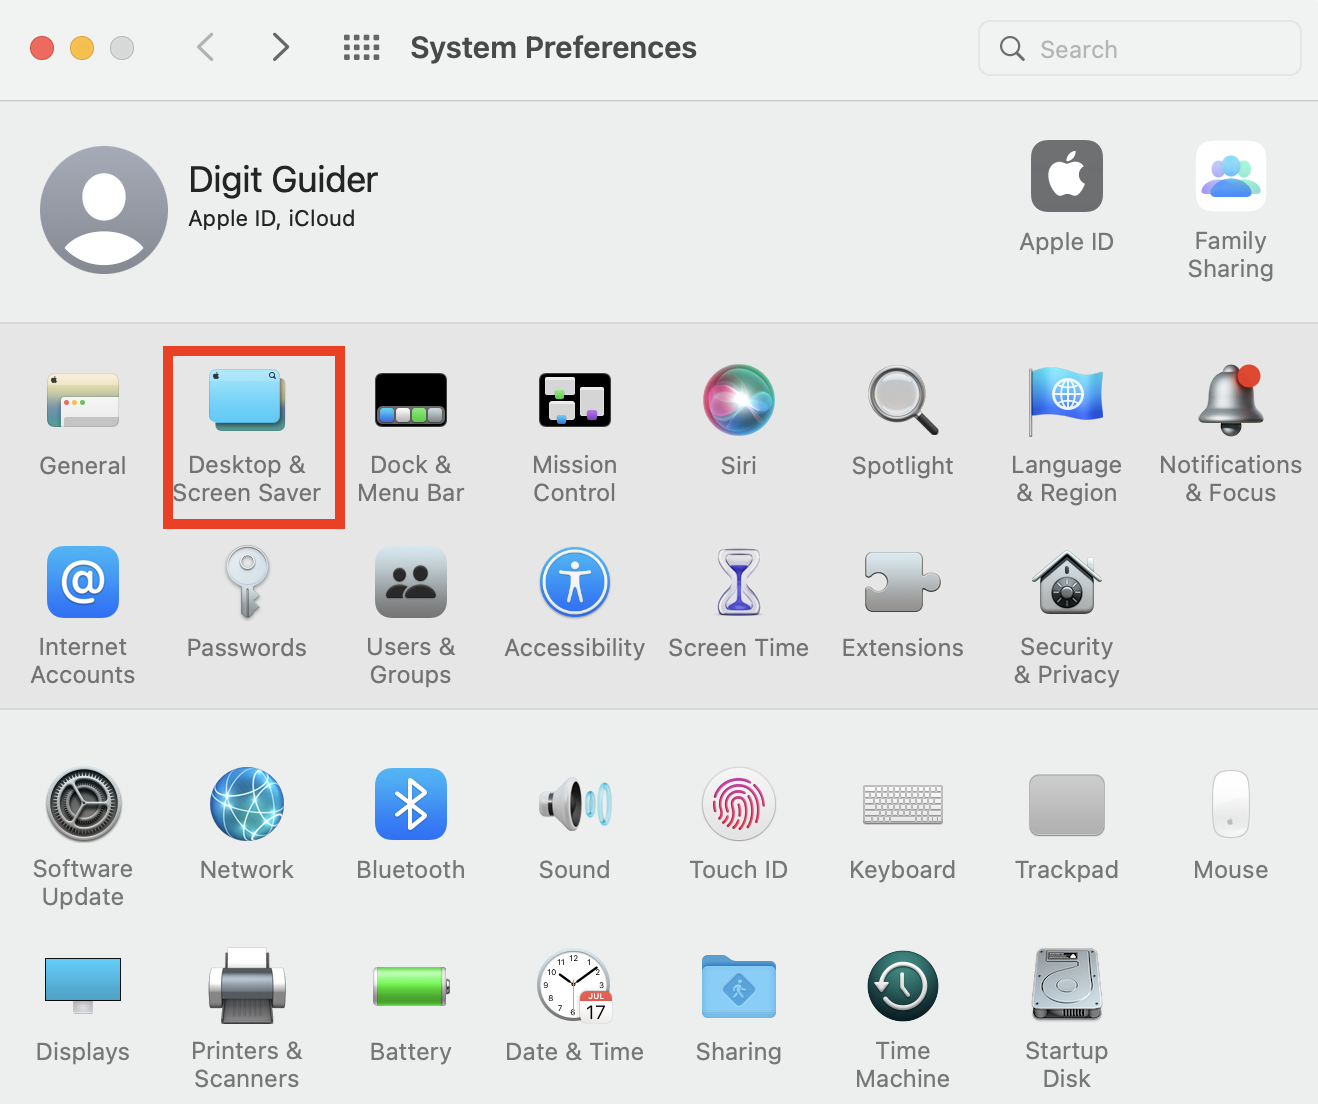 Desktop and Screen Saver under system preferences'